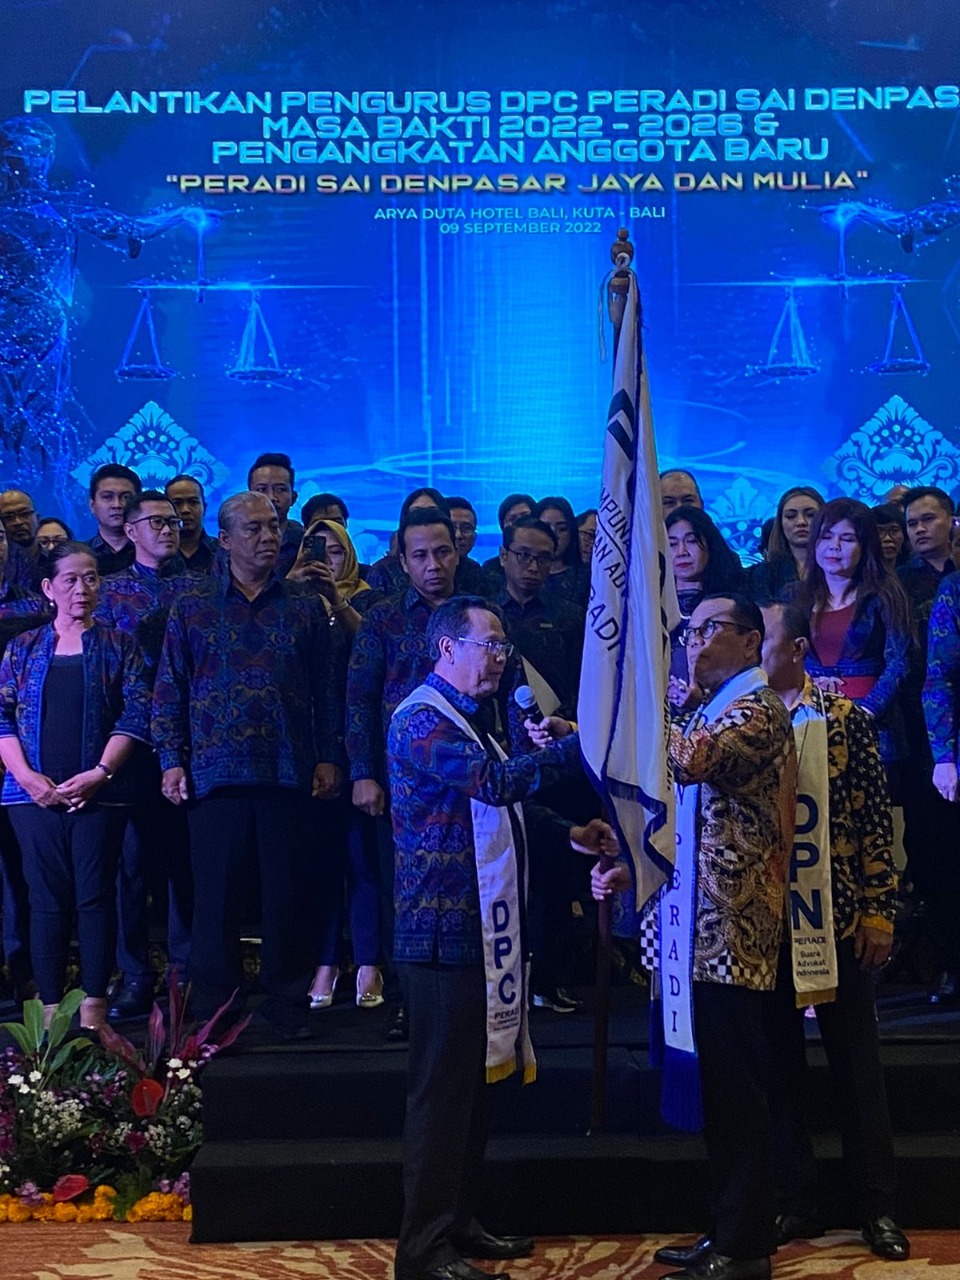 Pelantikan Pengurus DPC PERADI SAI Bali, Masa Bakti 2022-2026 - (09 September 2022)